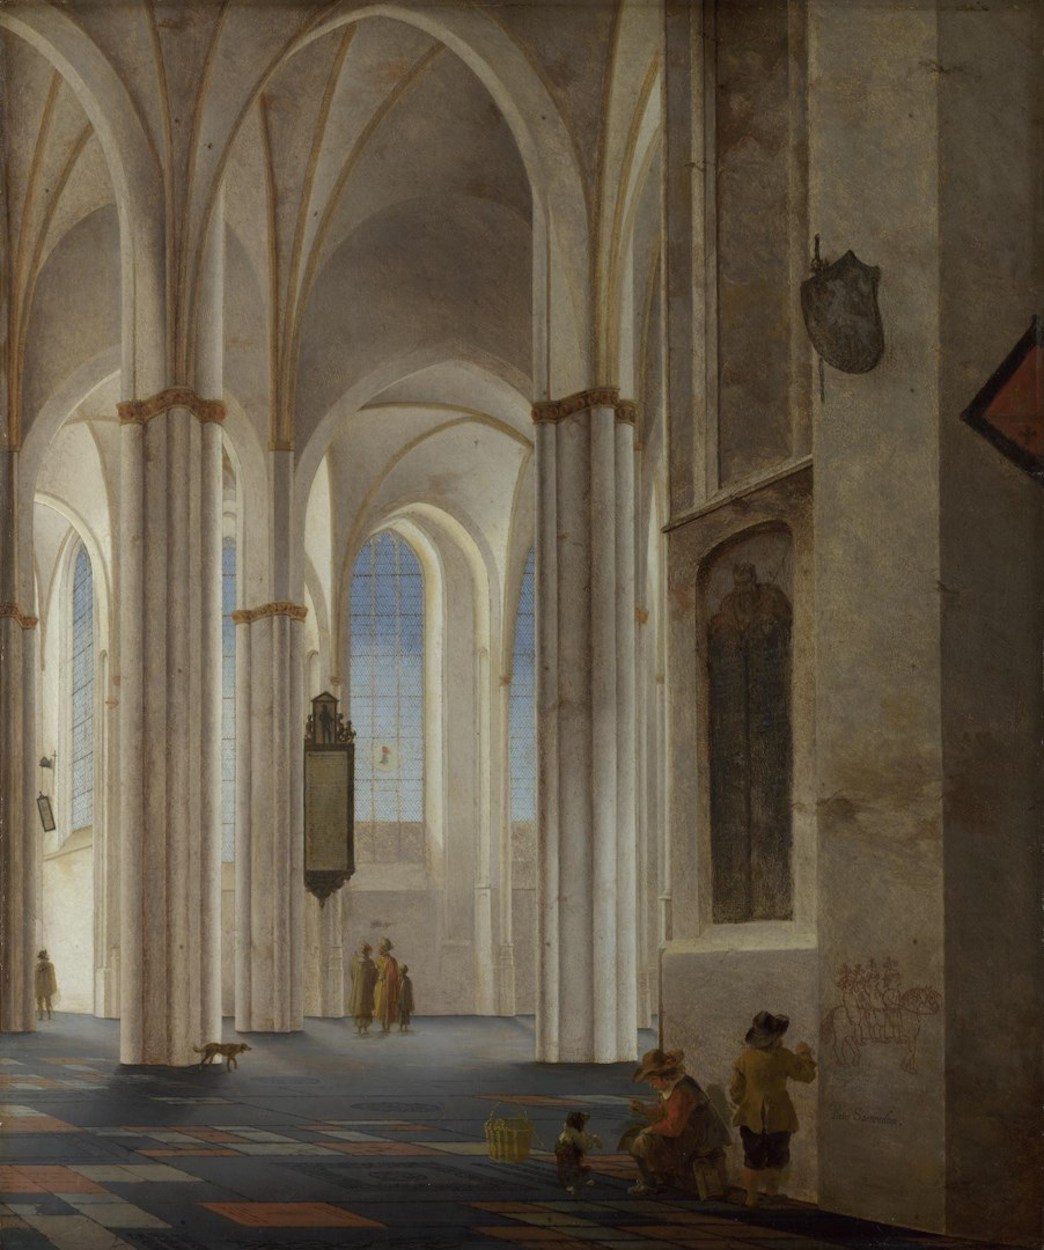 위트레흐트 뷔르커르크 내부(The Interior of the Buurkerk at Utrecht) by Pieter Jansz. Saenredam - 1644 - 60.1 cm × 50.1 cm 